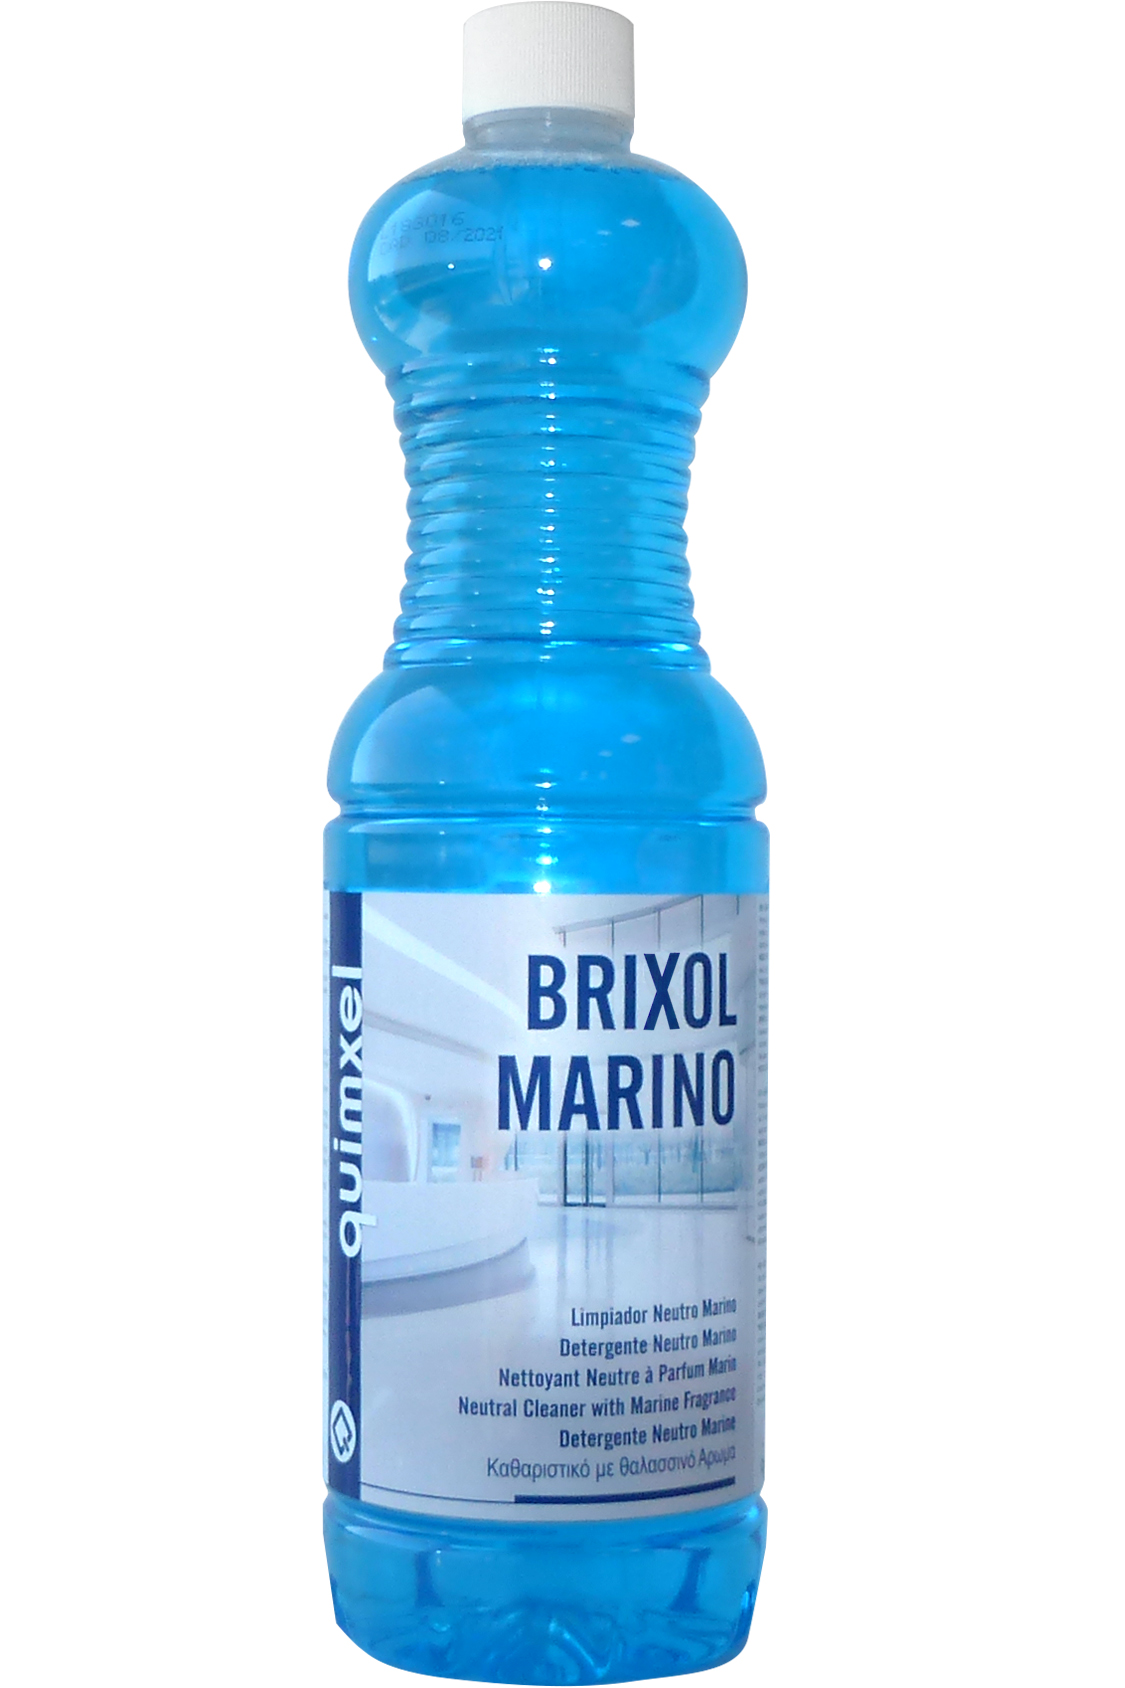 Limpiador Neutro Bioalcohol BRIXOL MARINO 5 Litros: 4,49 €